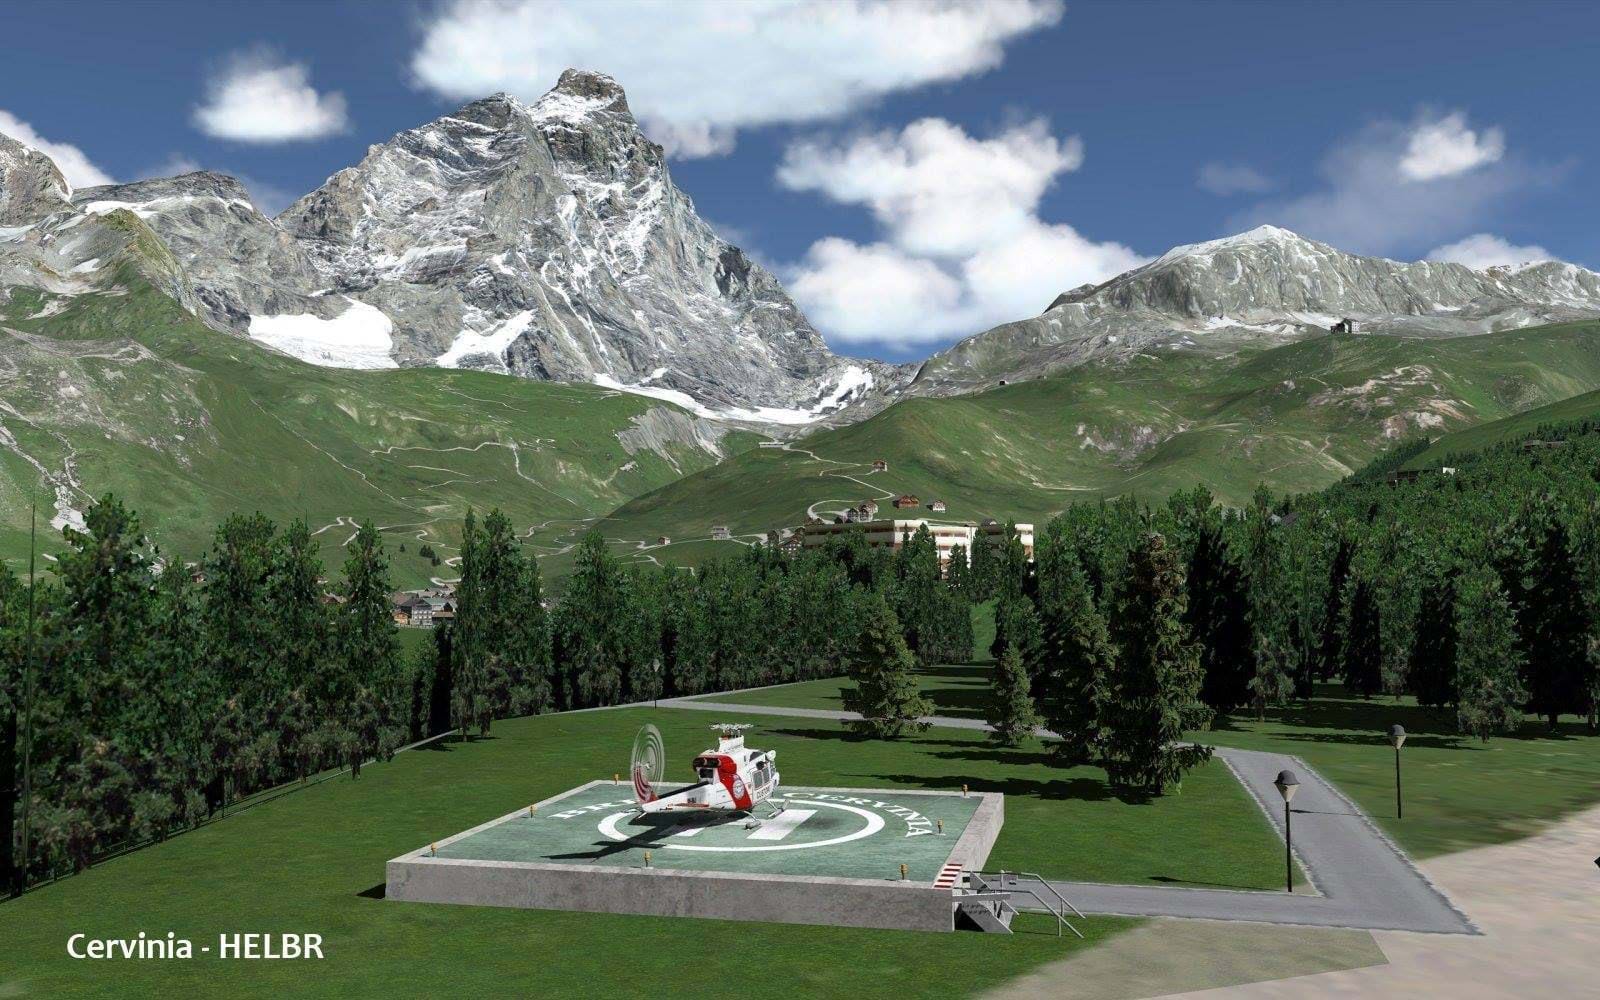 Frank Dainese's Matterhorn Park updated